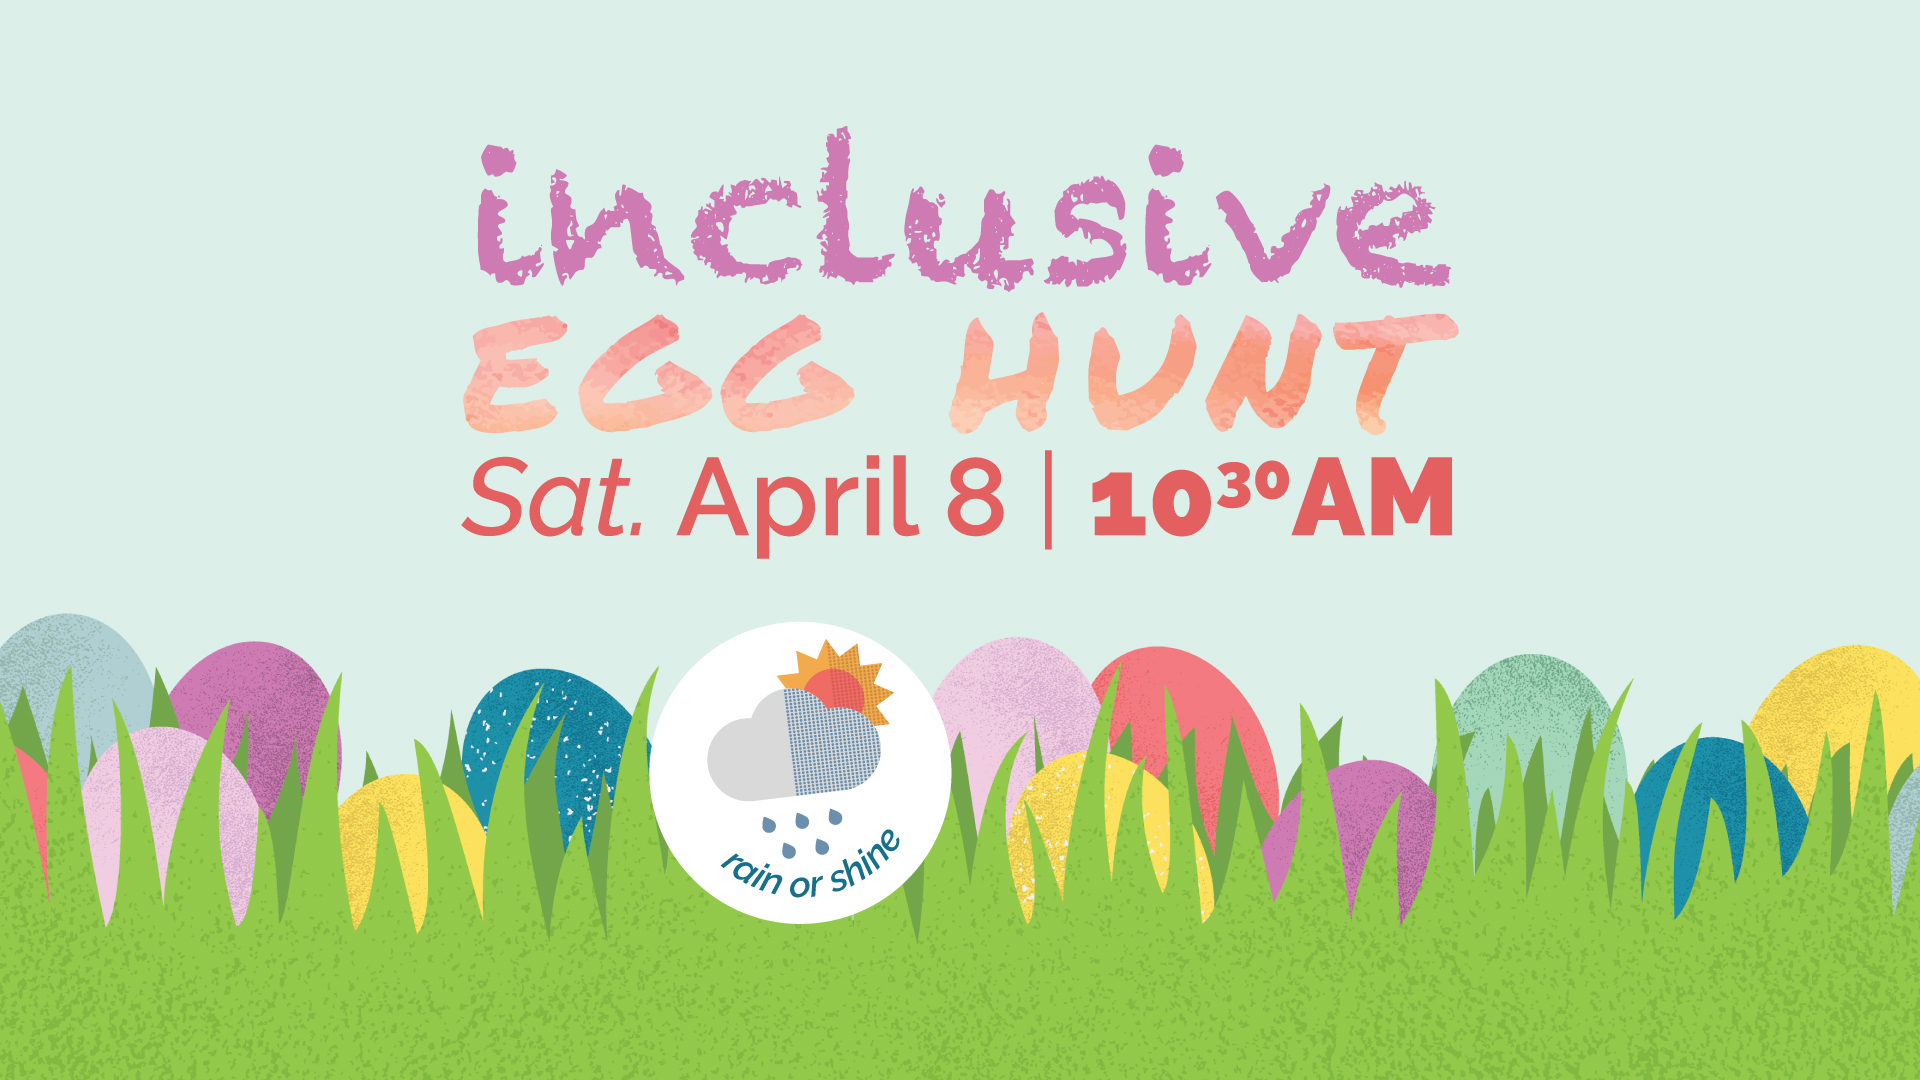 Inclusive Egg Hunt | Saturday, April 8 at 10:30AM | Rain or shine!